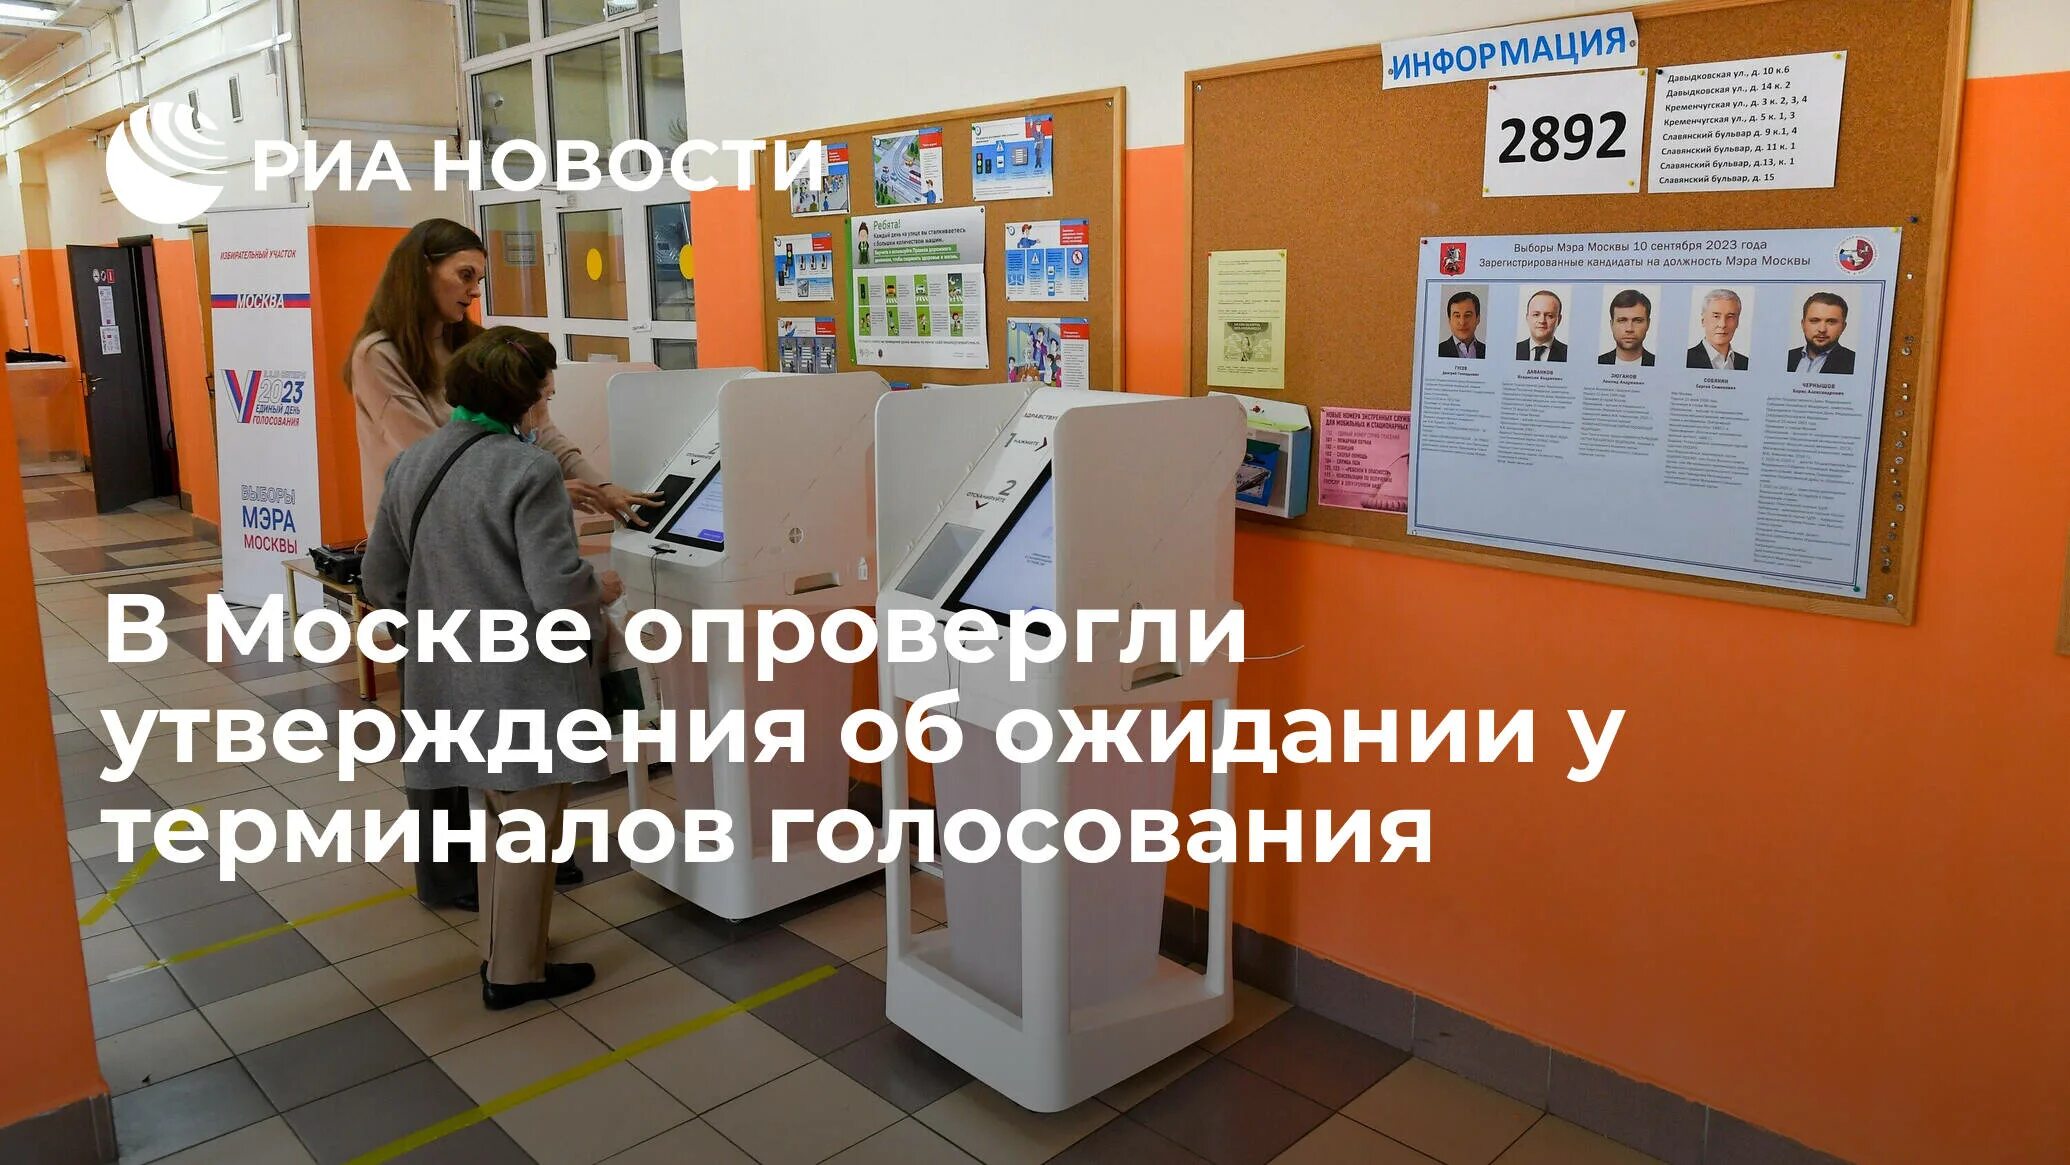 Как проголосовать на терминале. Терминалы для голосования в Москве. Терминал для электронного голосования 2023. Голосование через терминал. Электронный терминал для голосования в Москве фото.